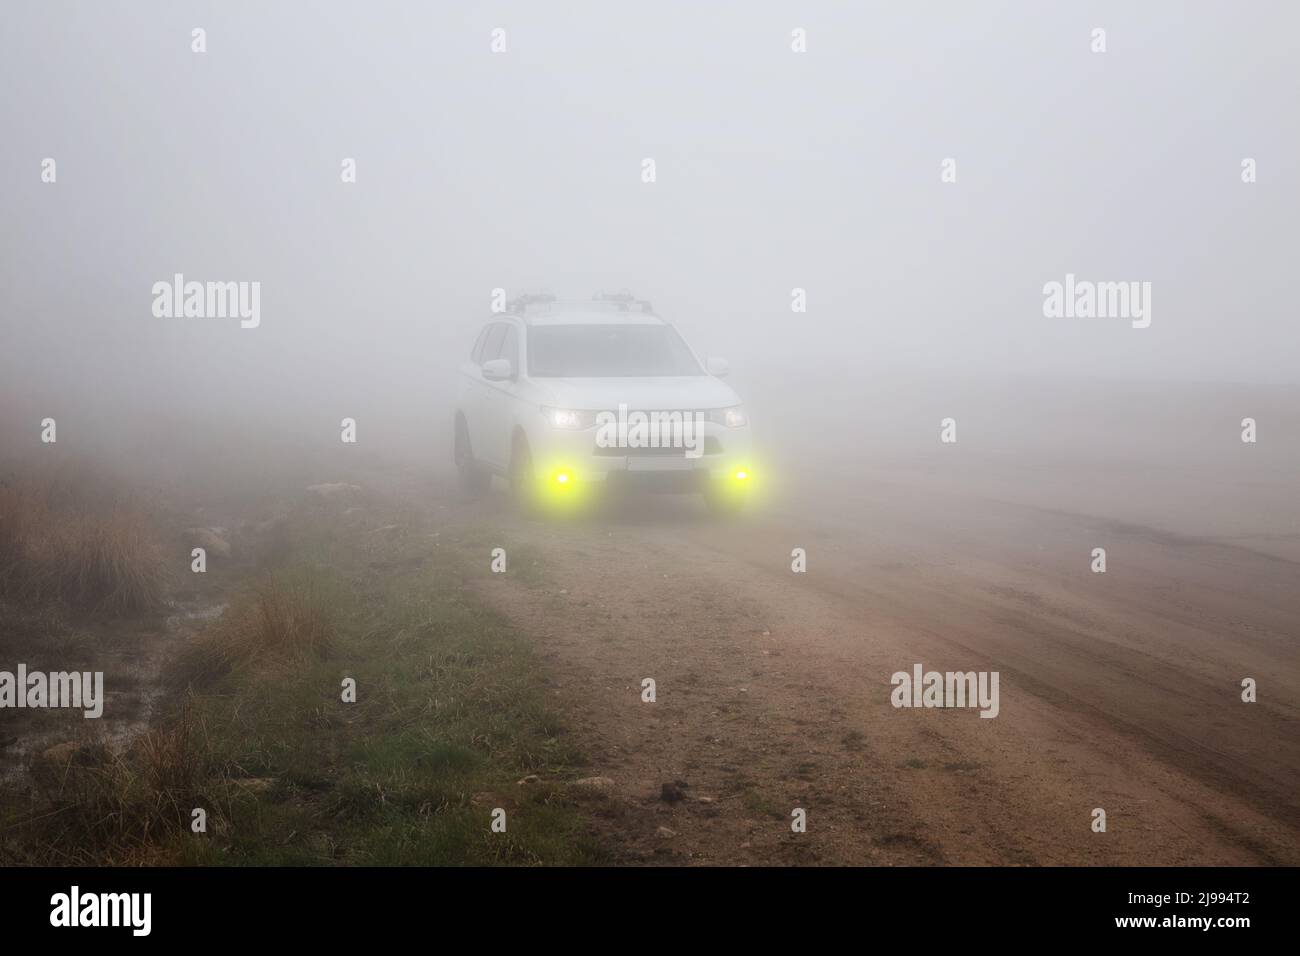 Coche SUV blanco con luces amarillas de niebla en una carretera de montaña en niebla espesa Foto de stock